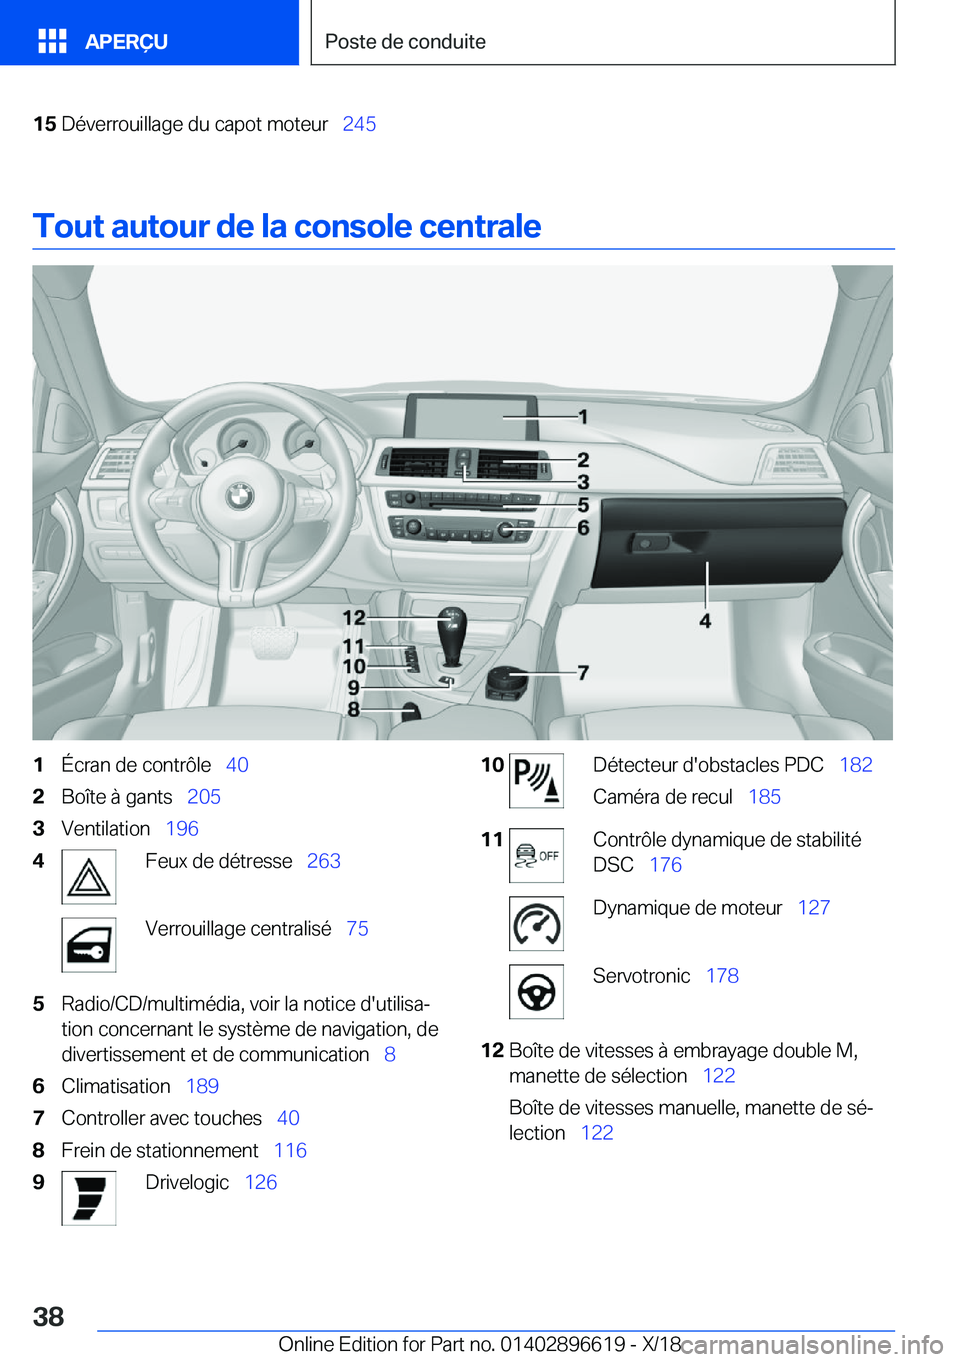 BMW M2 2019  Notices Demploi (in French) �1�5�D�é�v�e�r�r�o�u�i�l�l�a�g�e��d�u��c�a�p�o�t��m�o�t�e�u�r\_�2�4�5
�T�o�u�t��a�u�t�o�u�r��d�e��l�a��c�o�n�s�o�l�e��c�e�n�t�r�a�l�e
�1�